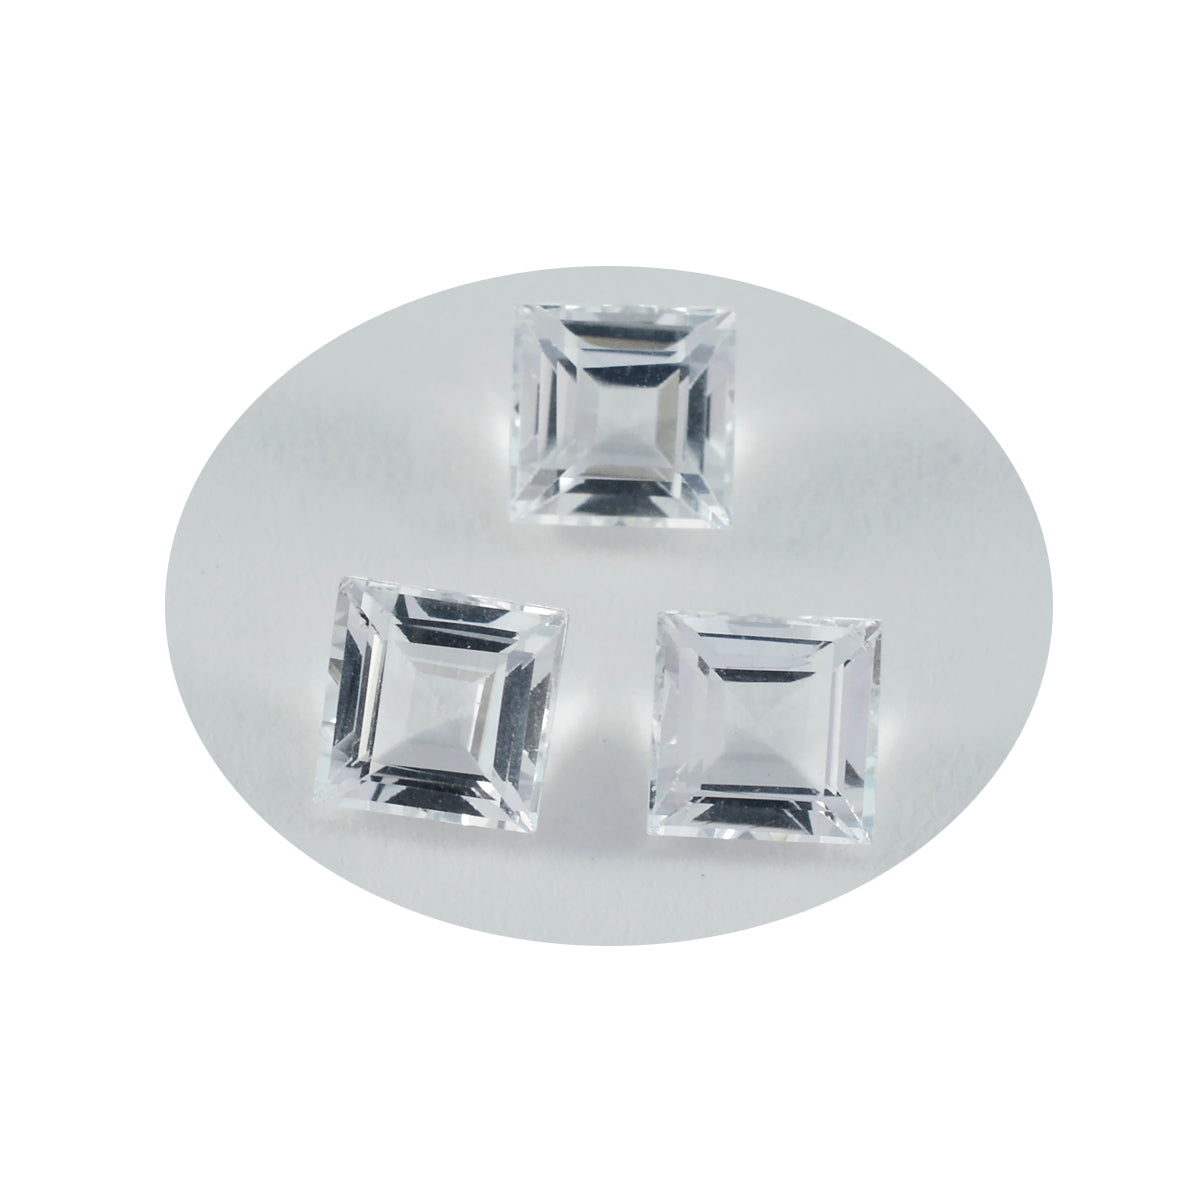 riyogems 1шт белый кристалл кварца ограненный 10х10 мм квадратной формы красивый качественный камень